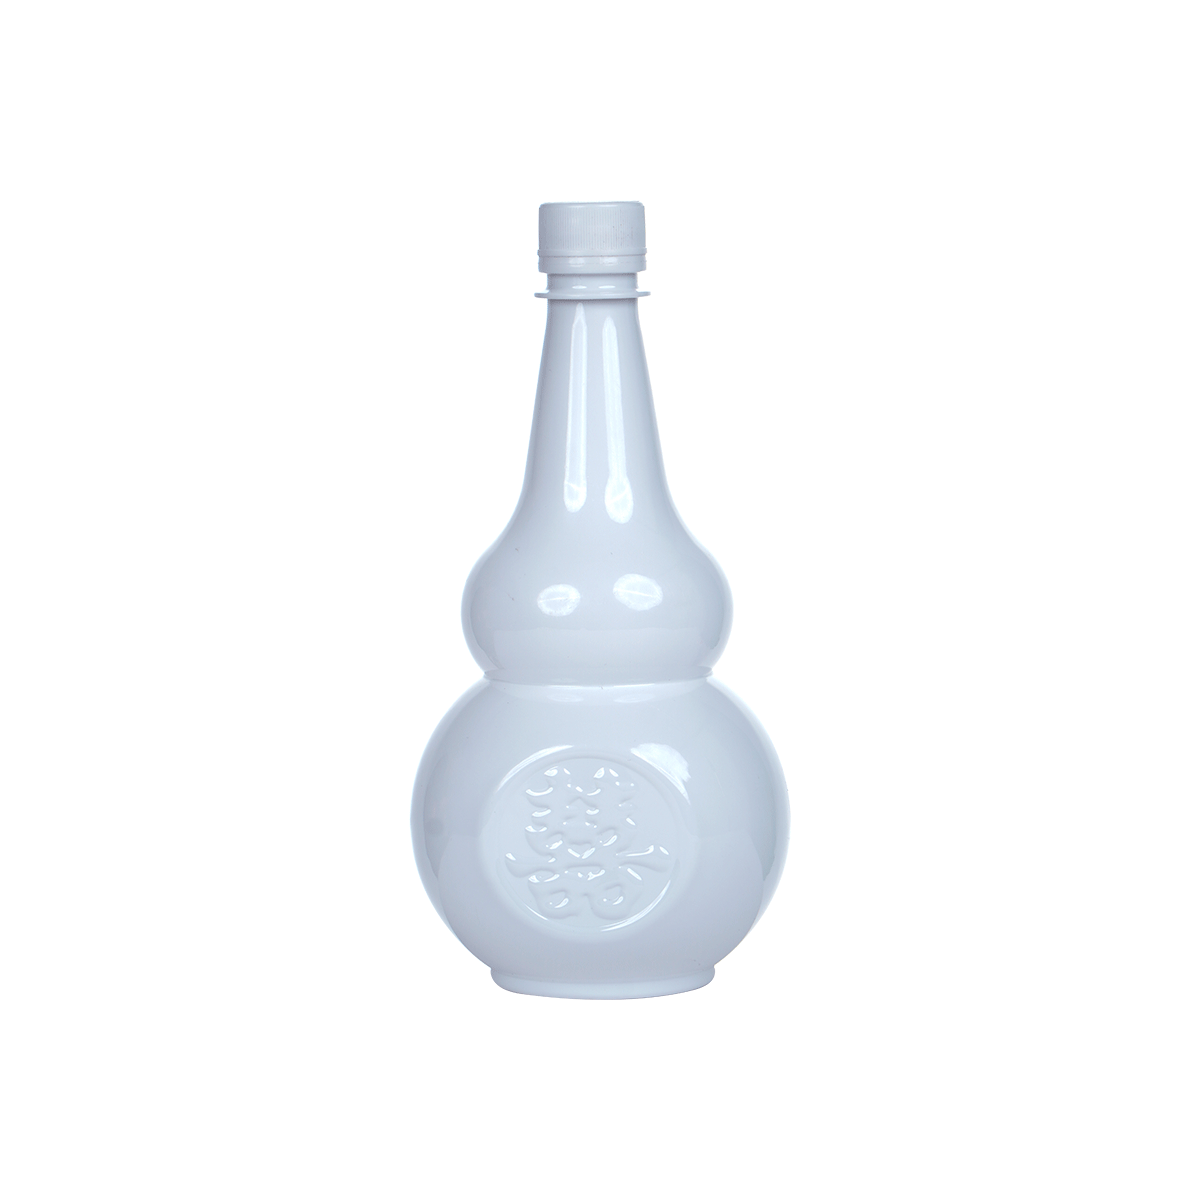 Porcelain-white Gourd-shaped Bottle 800ml P36